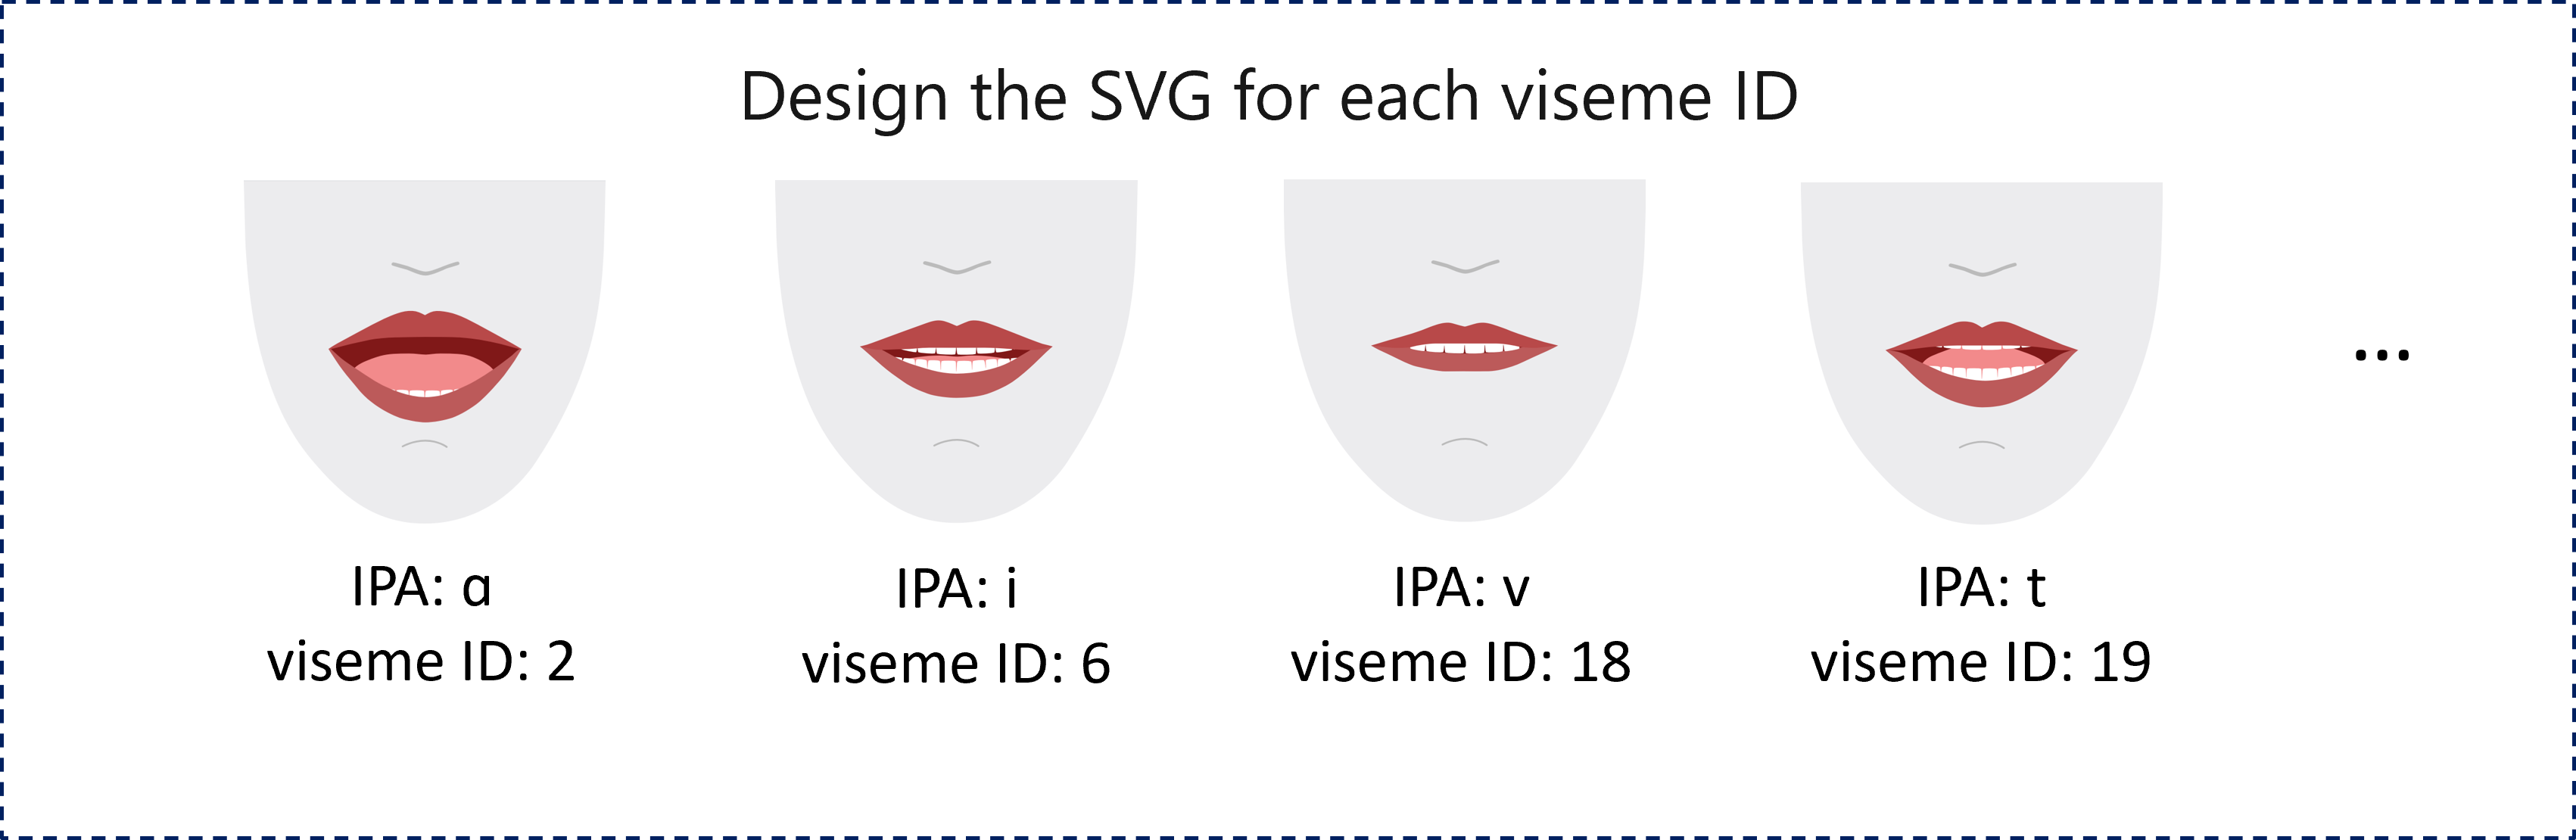 屏幕截图显示了四个红唇的 2D 渲染示例，每个红唇代表对应于音素的不同视素 ID。